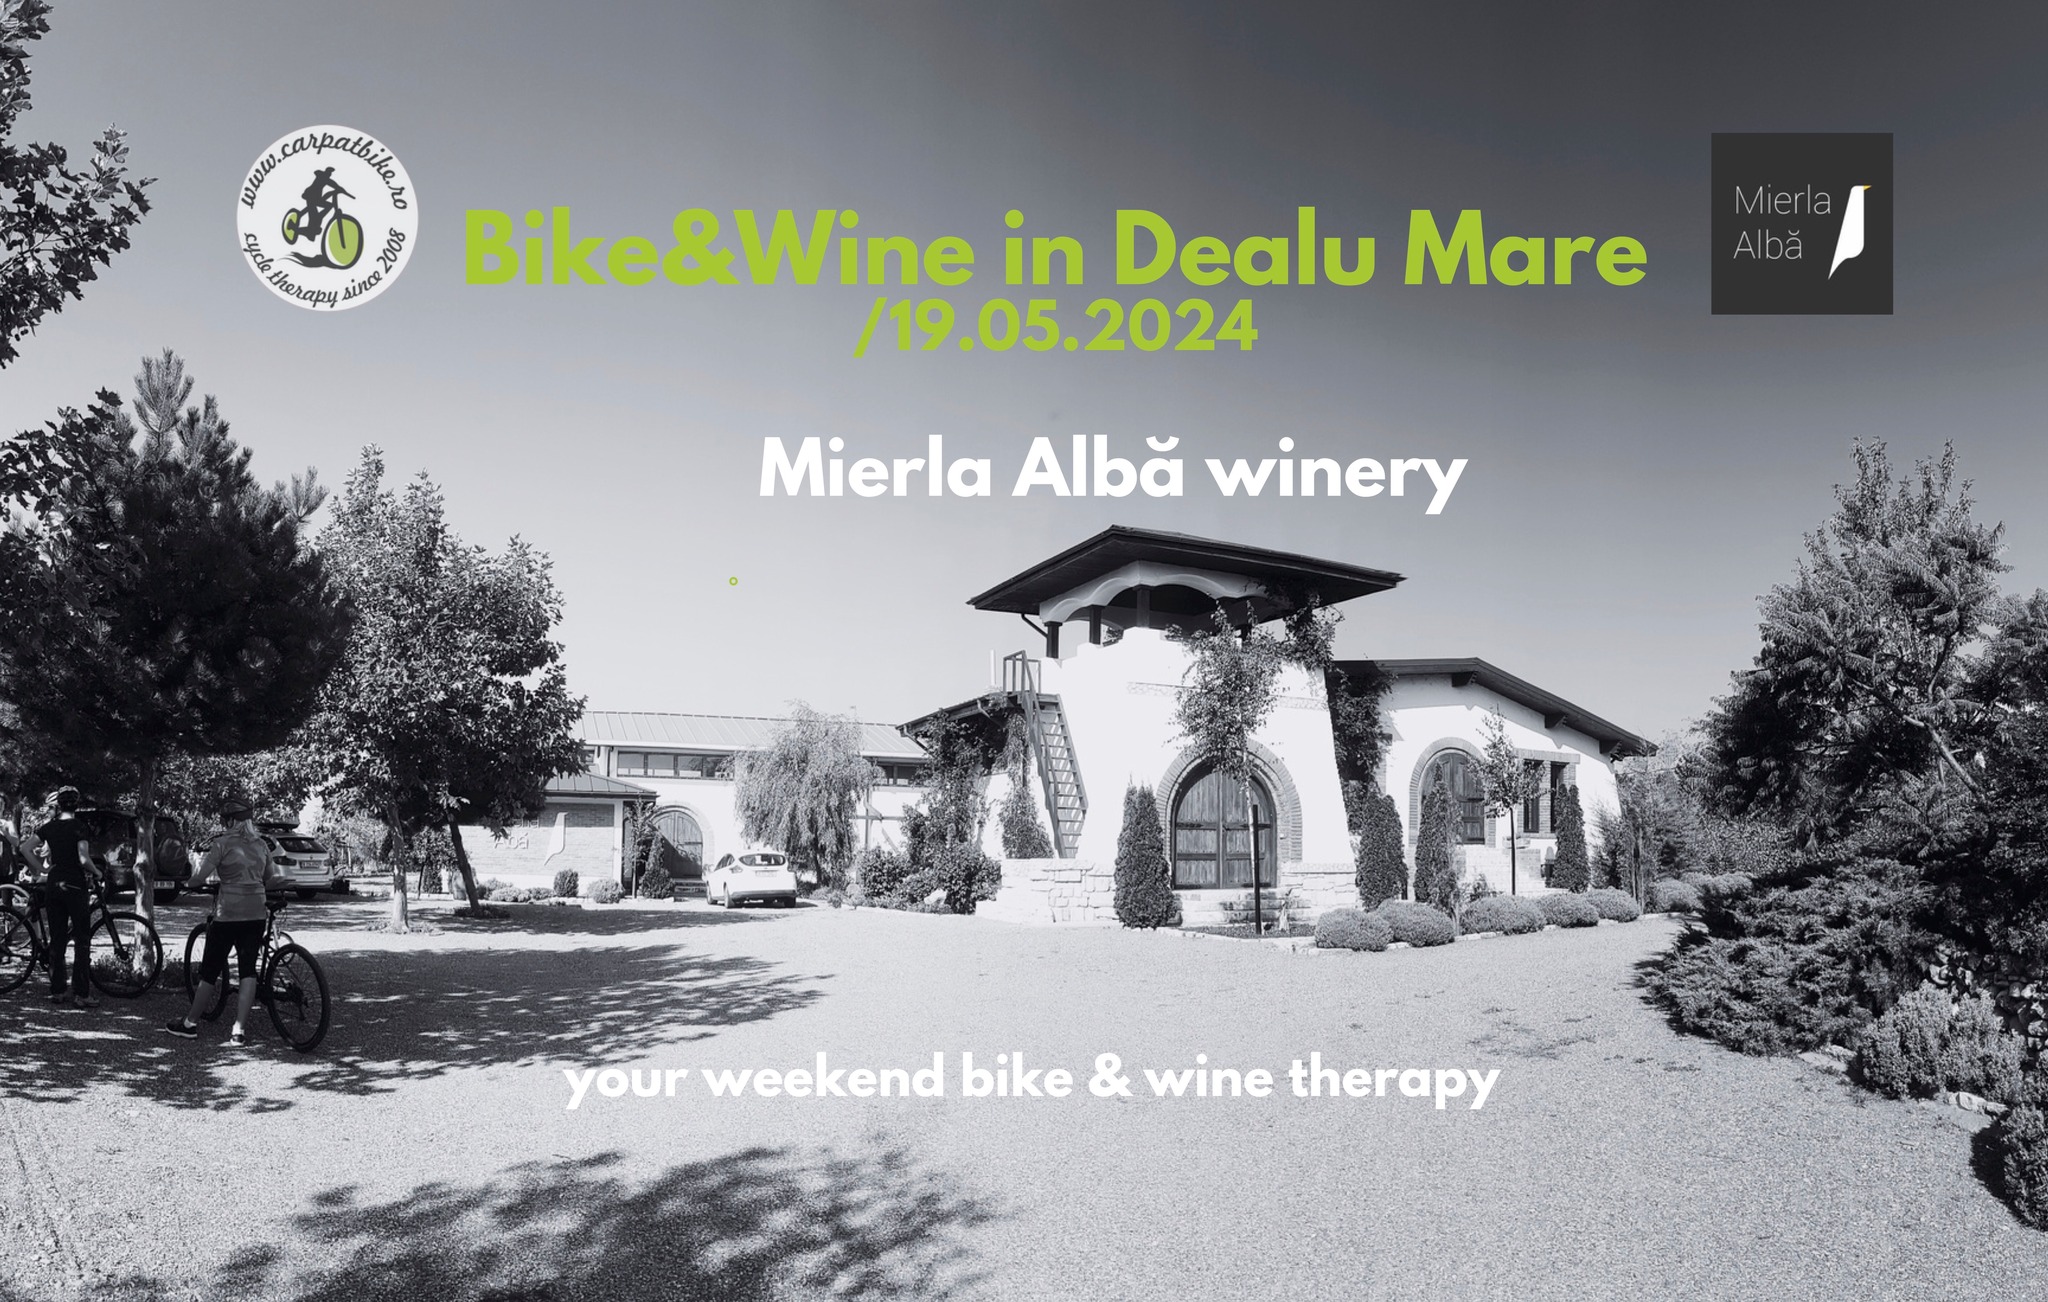 Bike&Wine in Dealu Mare - Mierla Alba (Dealu Mare)